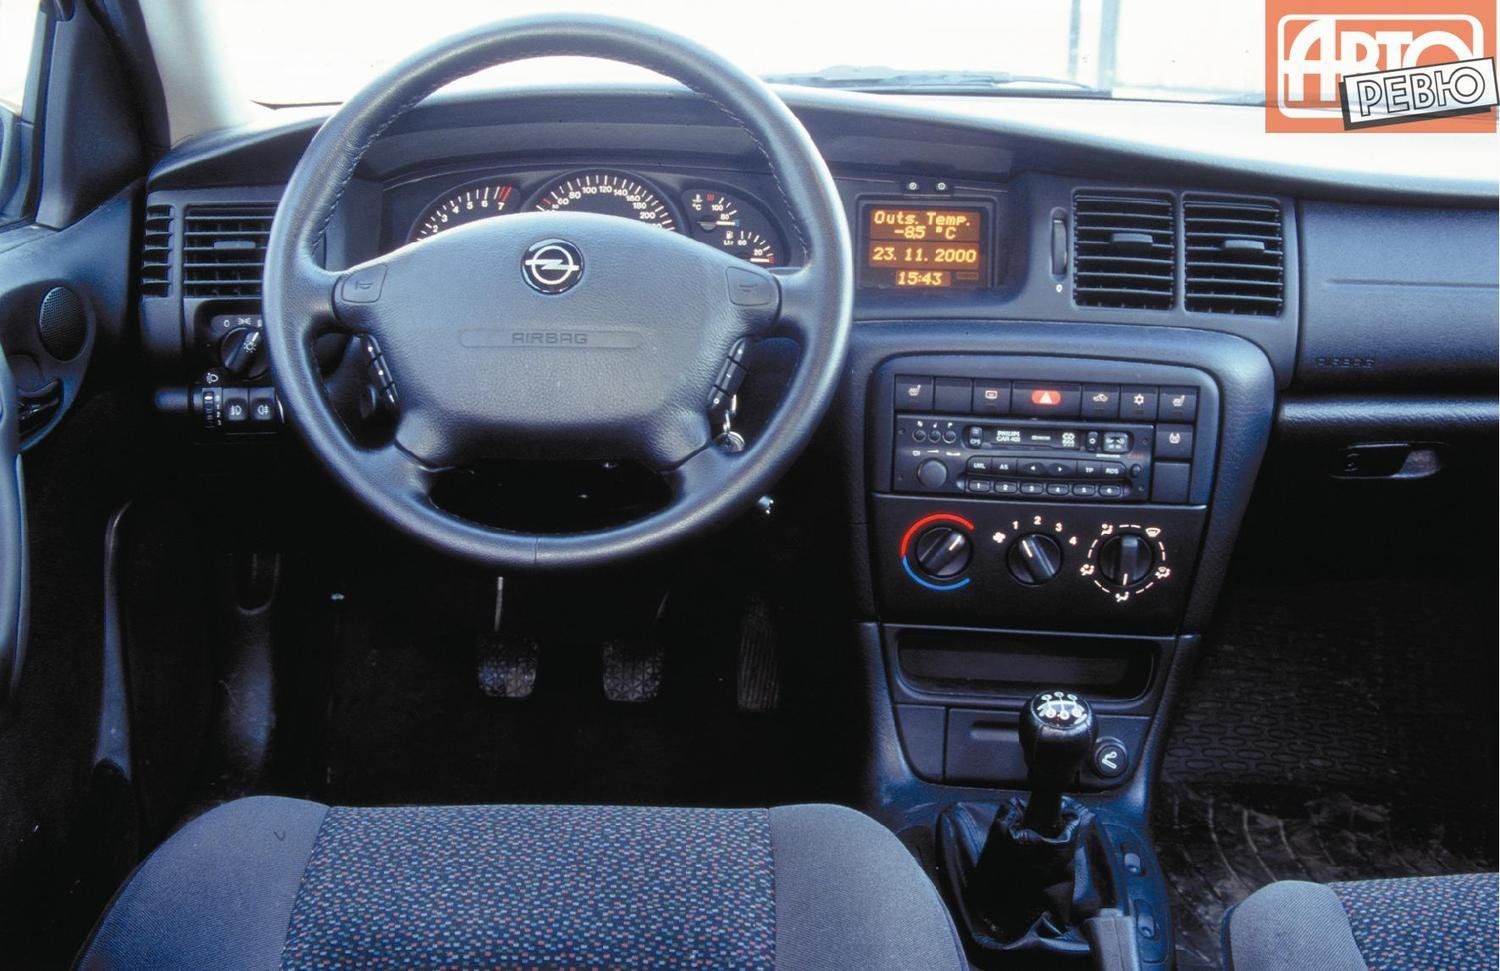 Вектра б автомат. Opel Vectra 2.0 МТ, 1996,. Опель Вектра 1997 универсал салон. Опель Вектра 1.6 1996. Опель Вектра б 2000 салон.